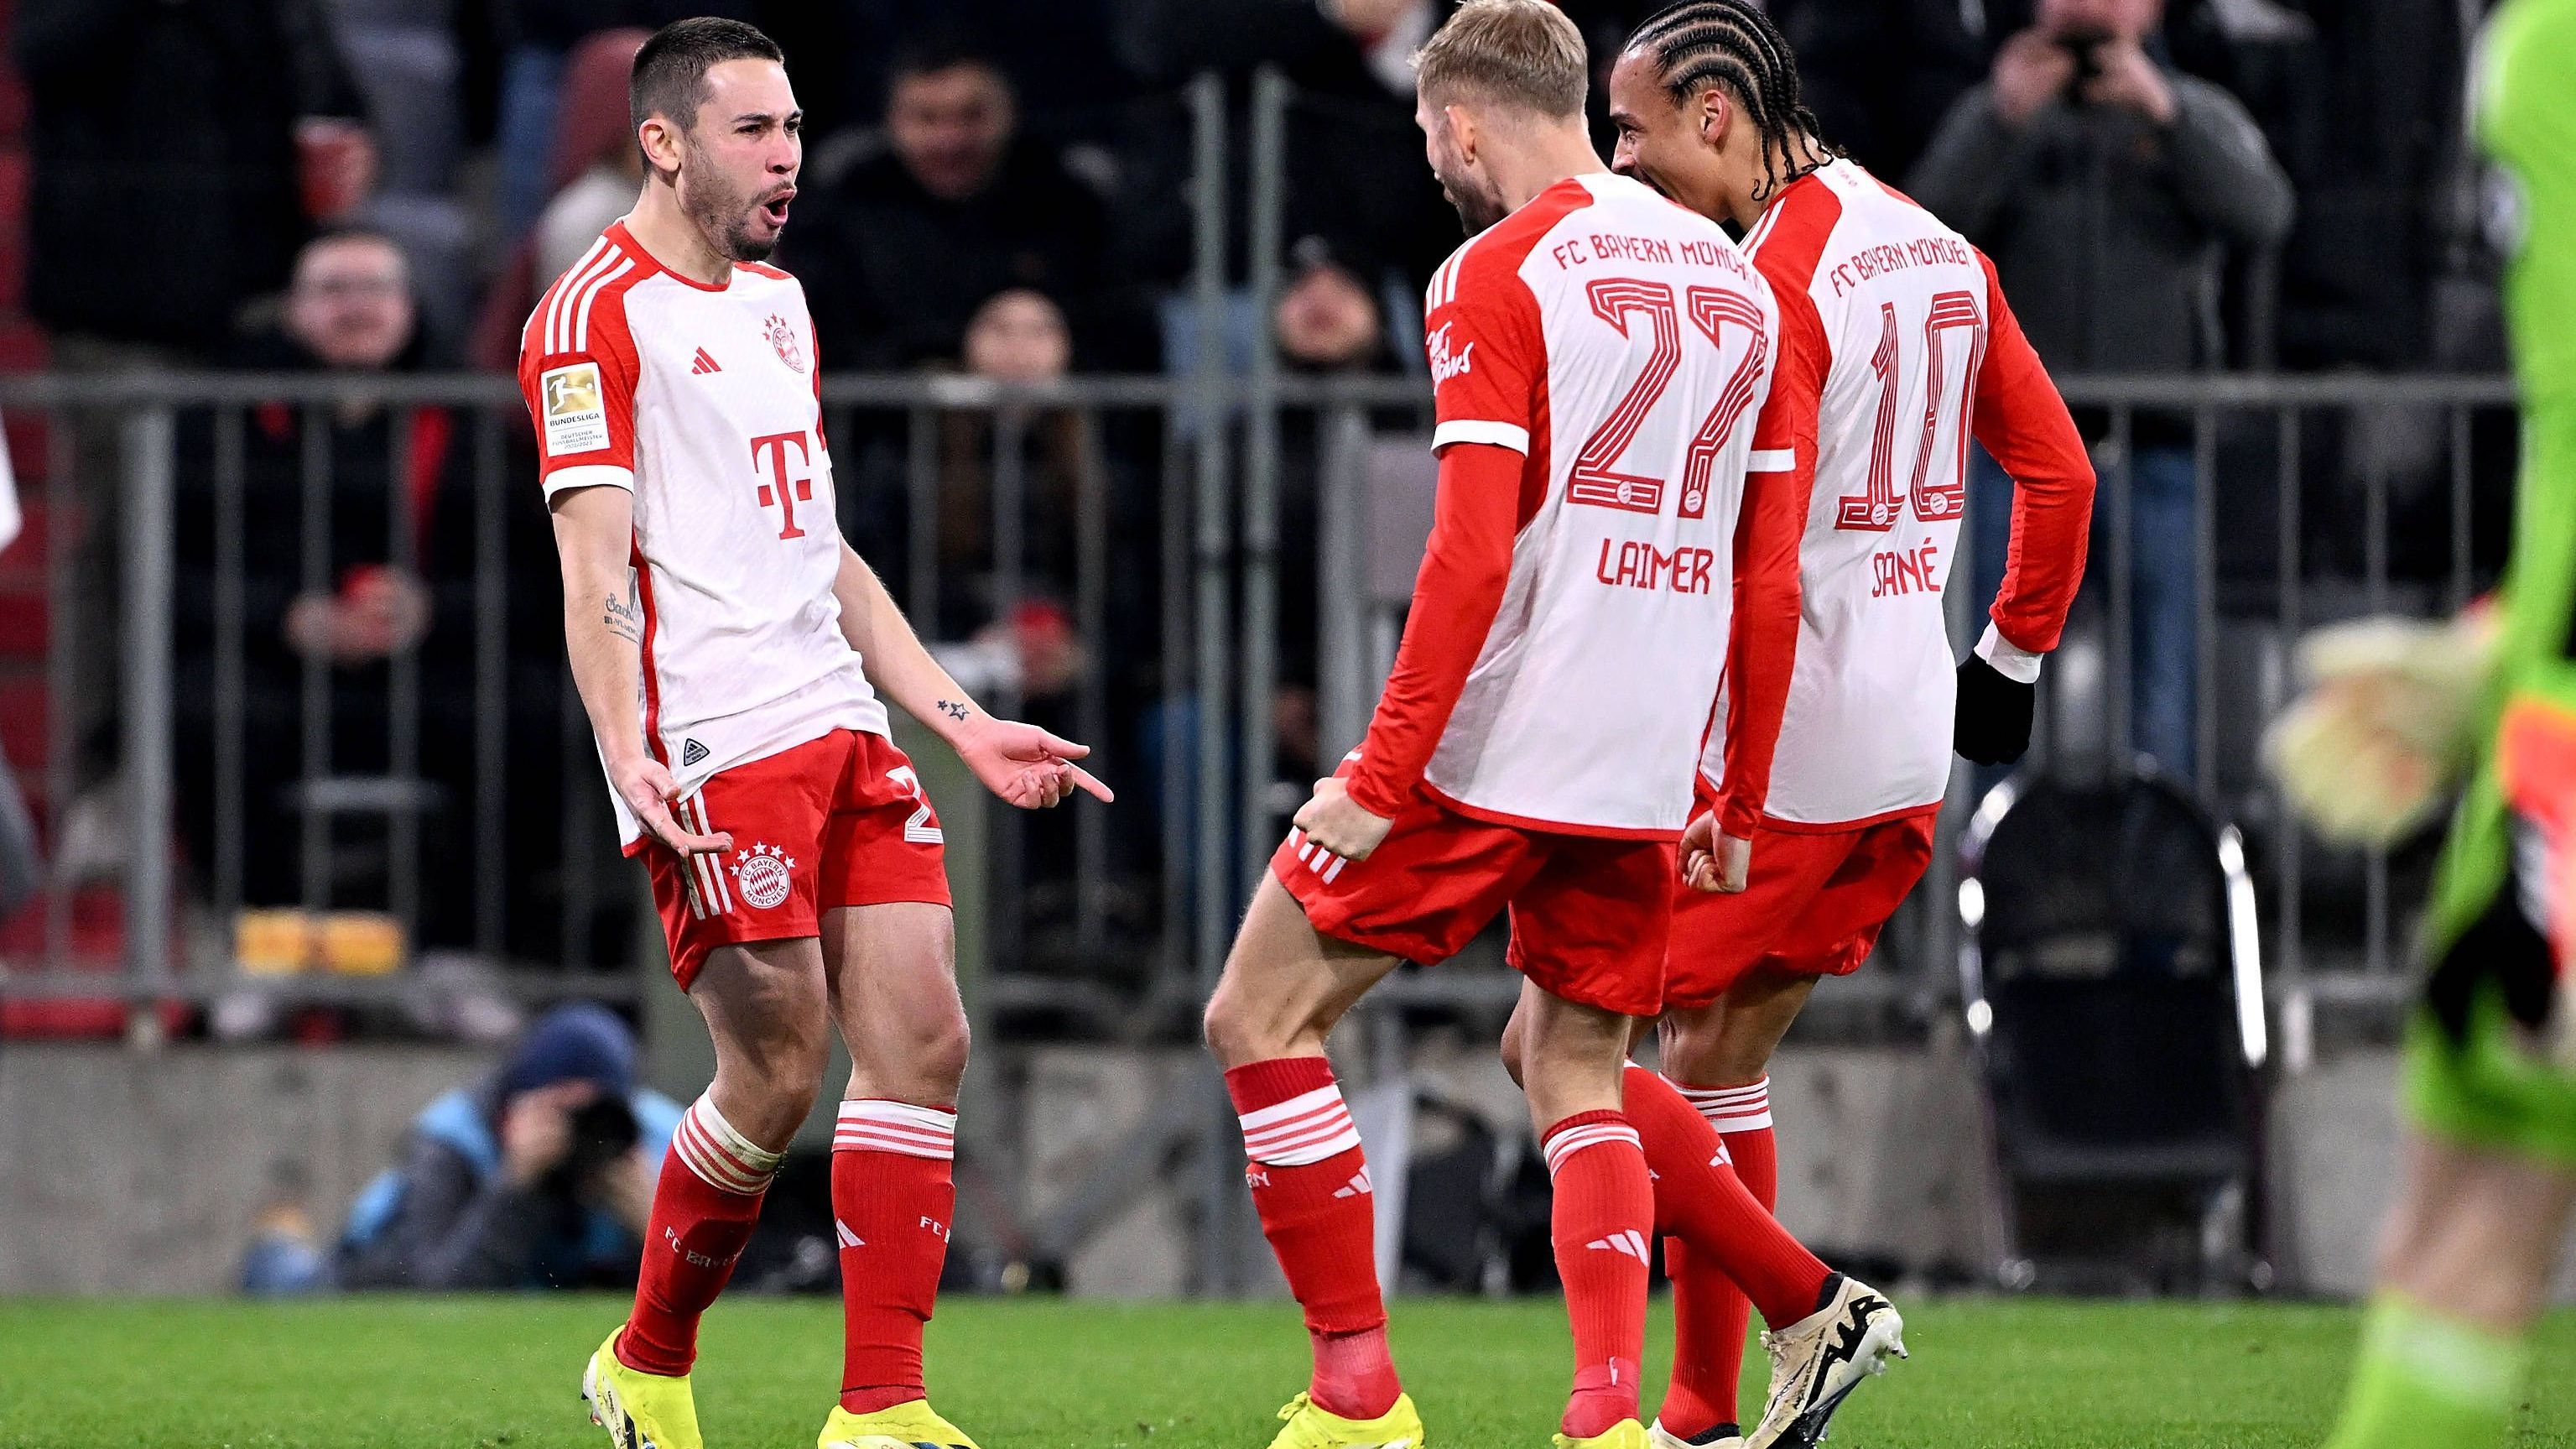 <strong>FC Bayern vs. Union Berlin: Einzelkritiken der FCB-Stars</strong><br>Der FC Bayern München schlägt Union Berlin mit 1:0 in einem hart umkämpften Spiel. Die Einzelkritiken der Profis des FCB.